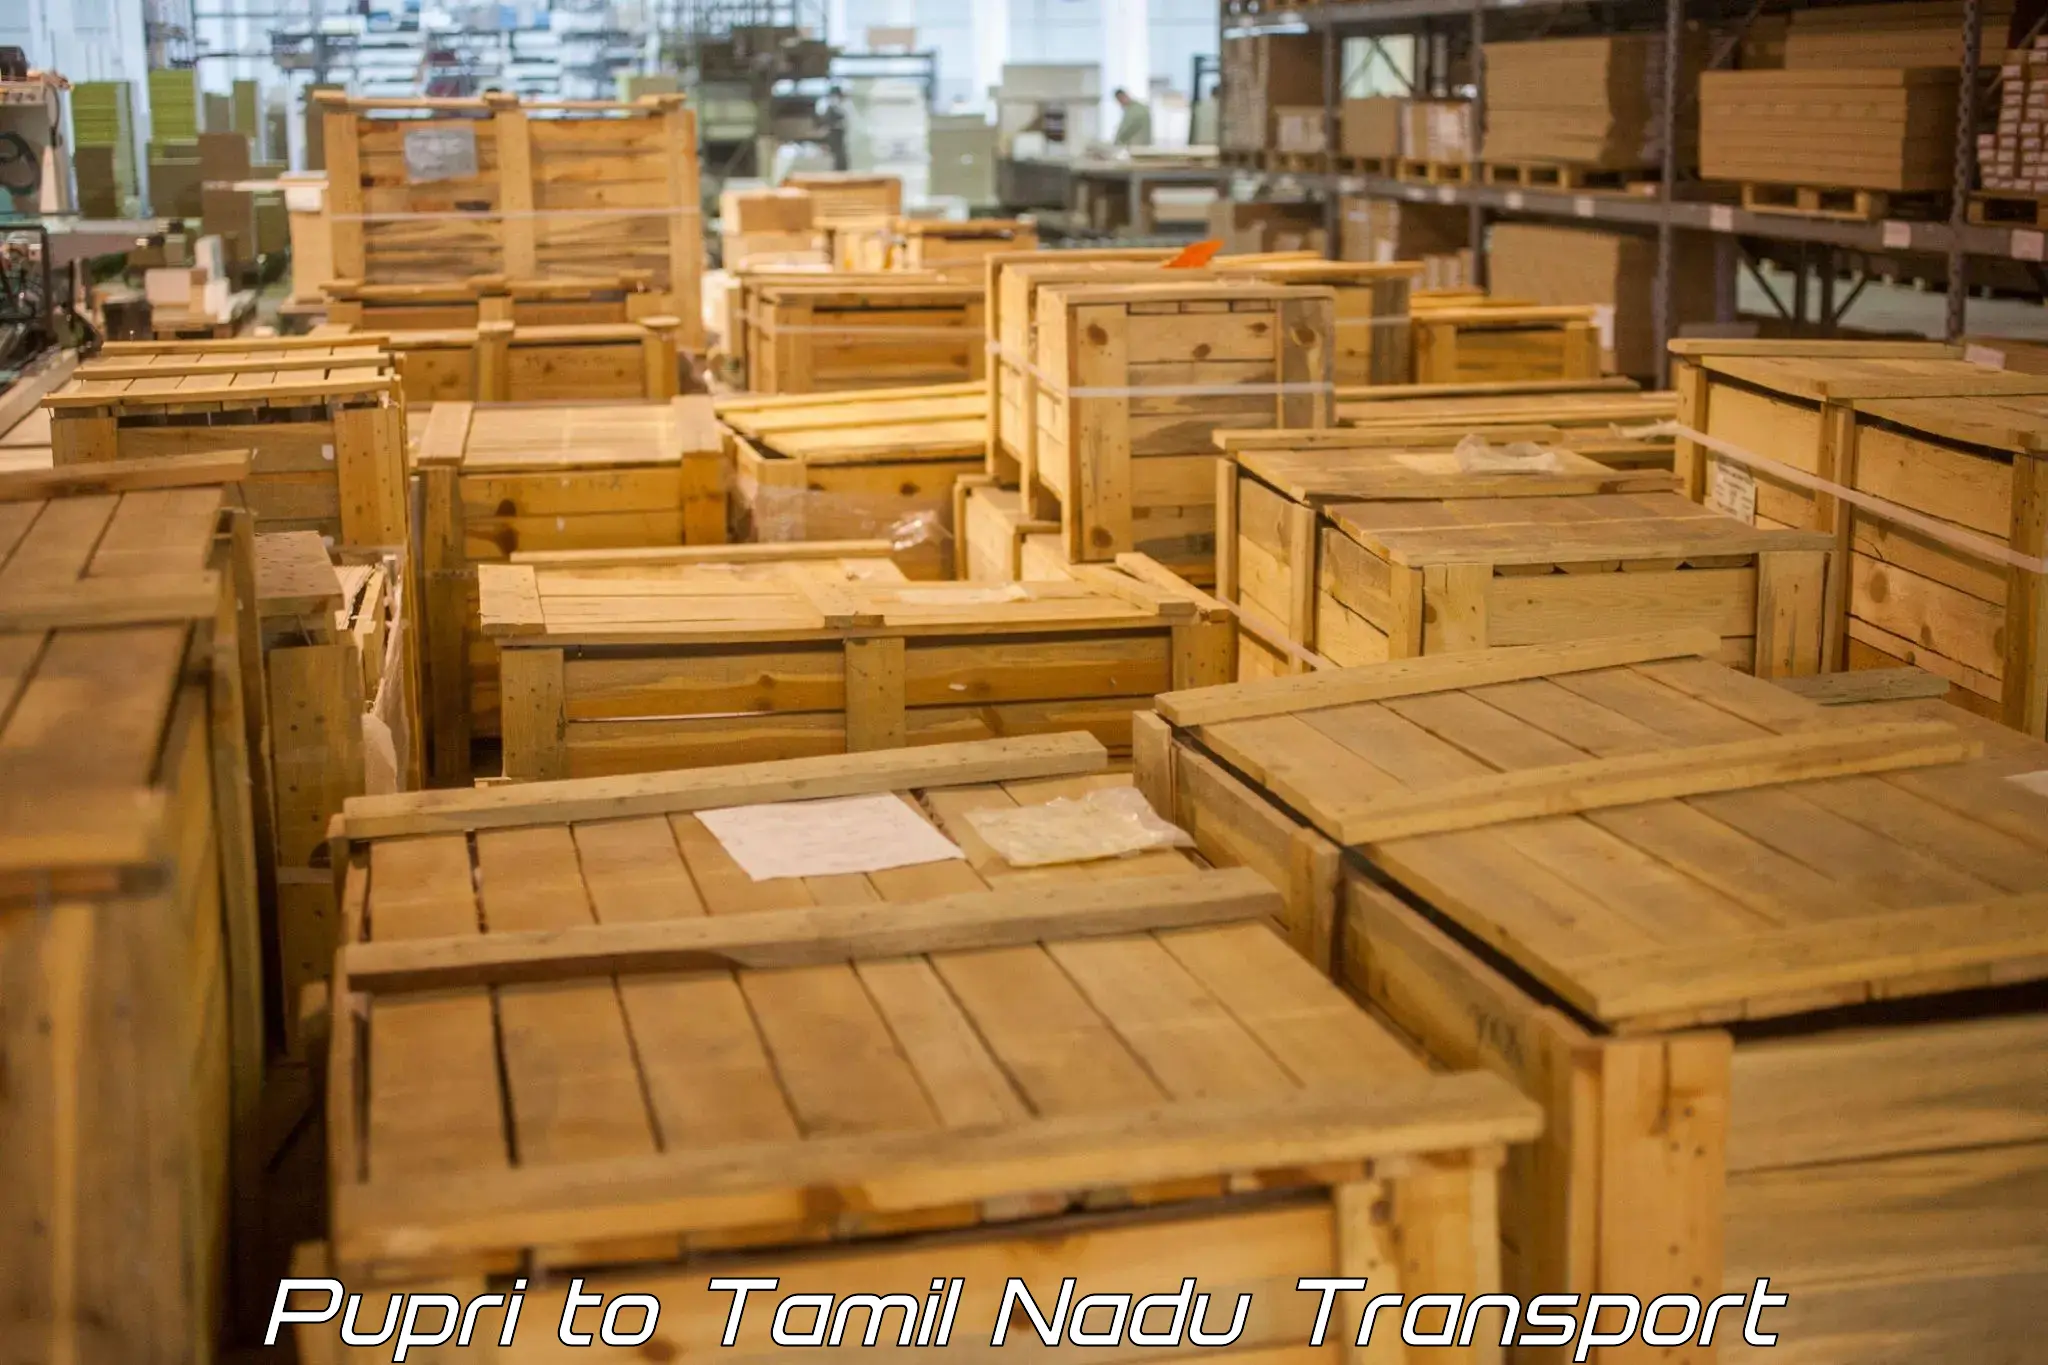 Express transport services Pupri to Tamil Nadu